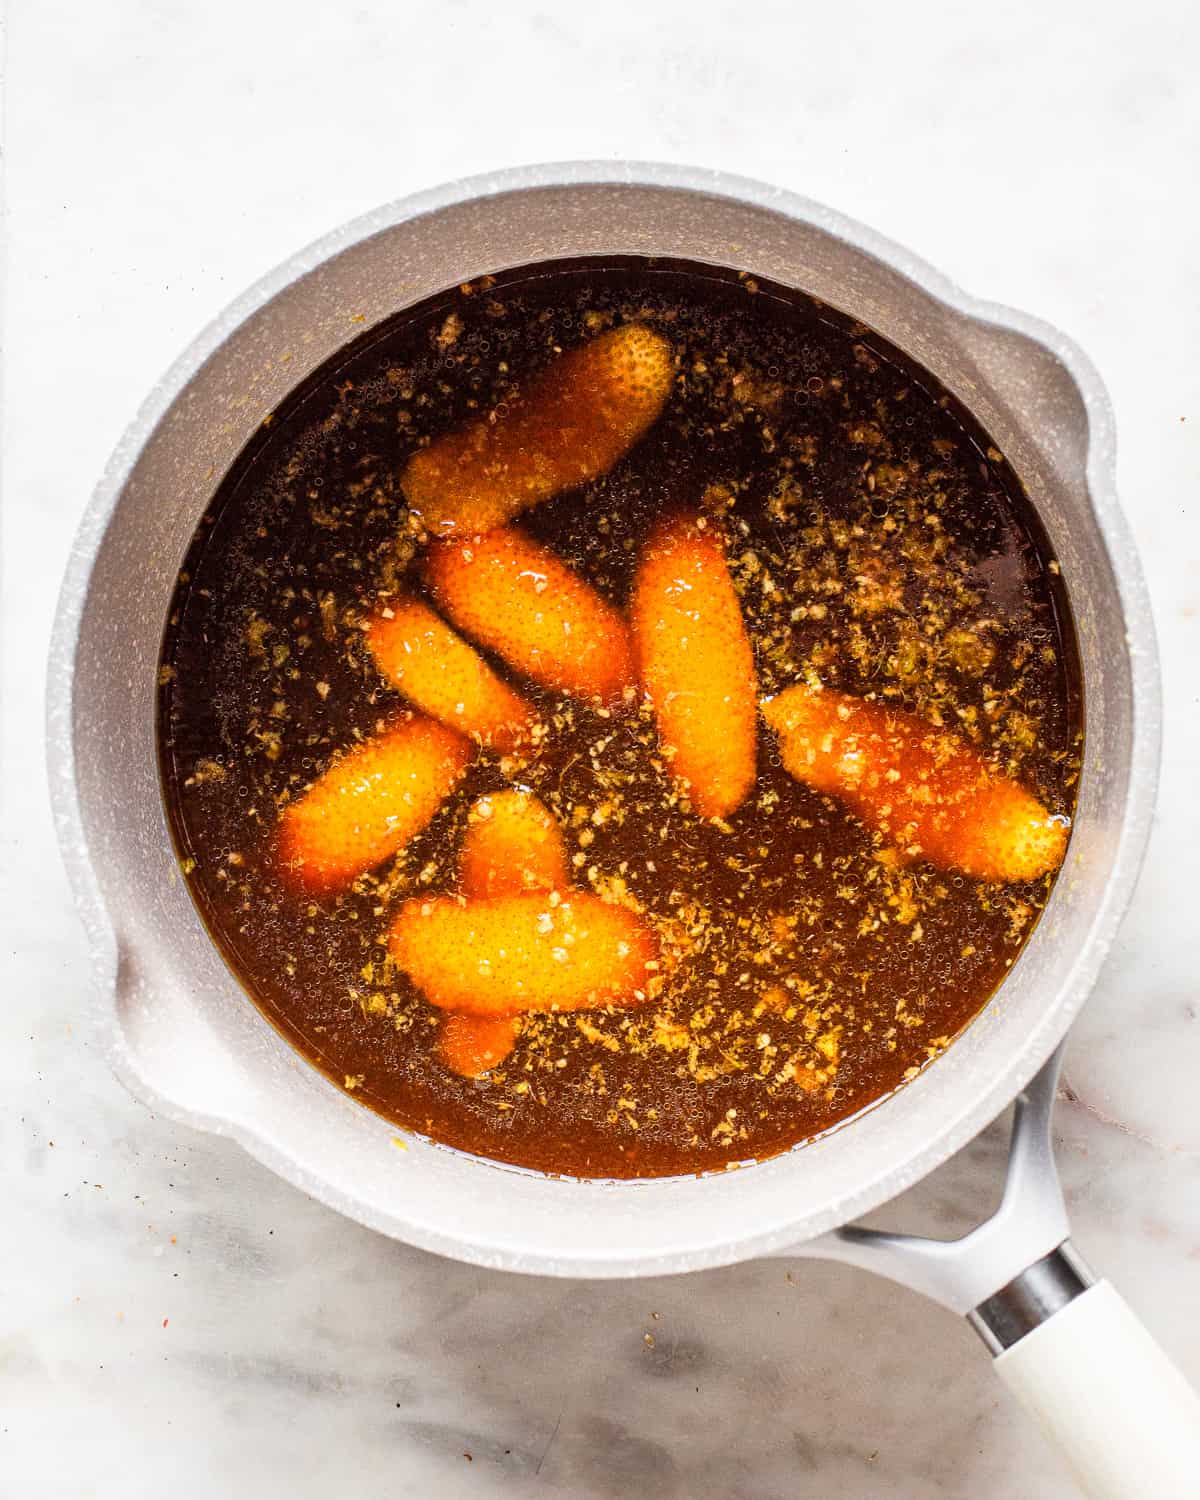 Light grey saucepan with orange zest swimming in a brown liquid.